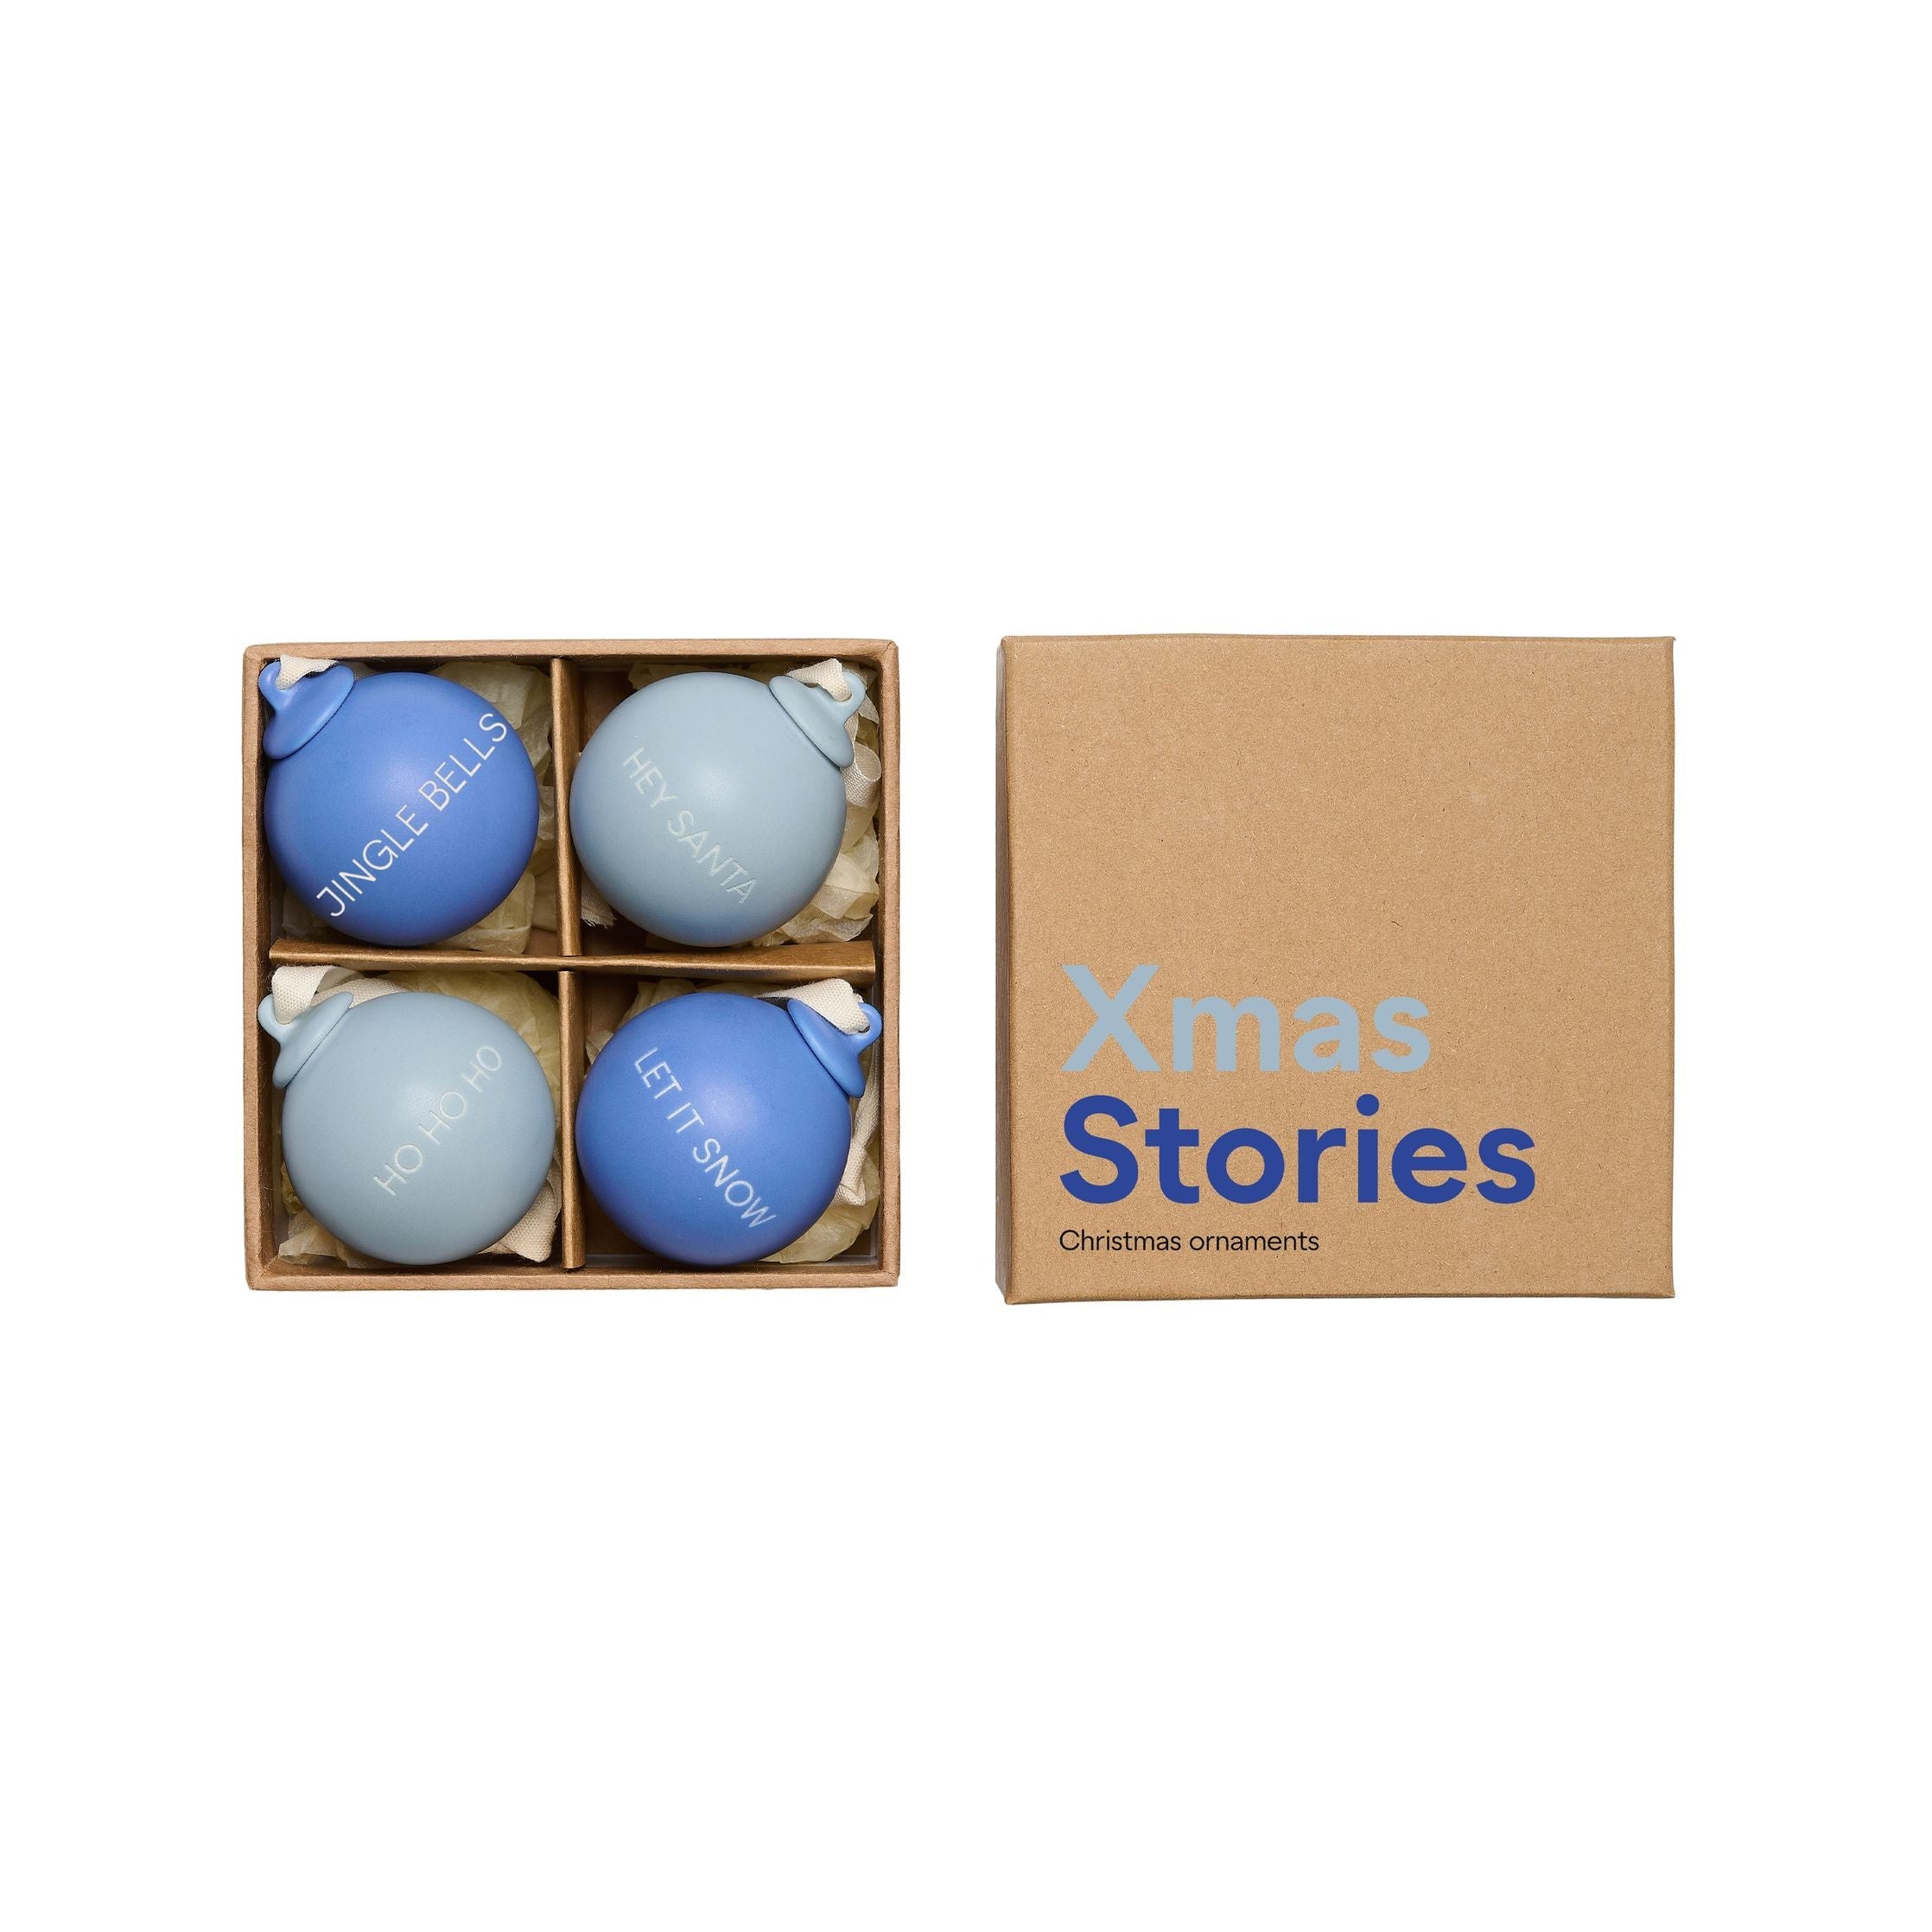 Lettres de conception histoires de Noël pendentifs balles 40 mm (ensemble de 4 pcs), bleu cobalt / bleu clair